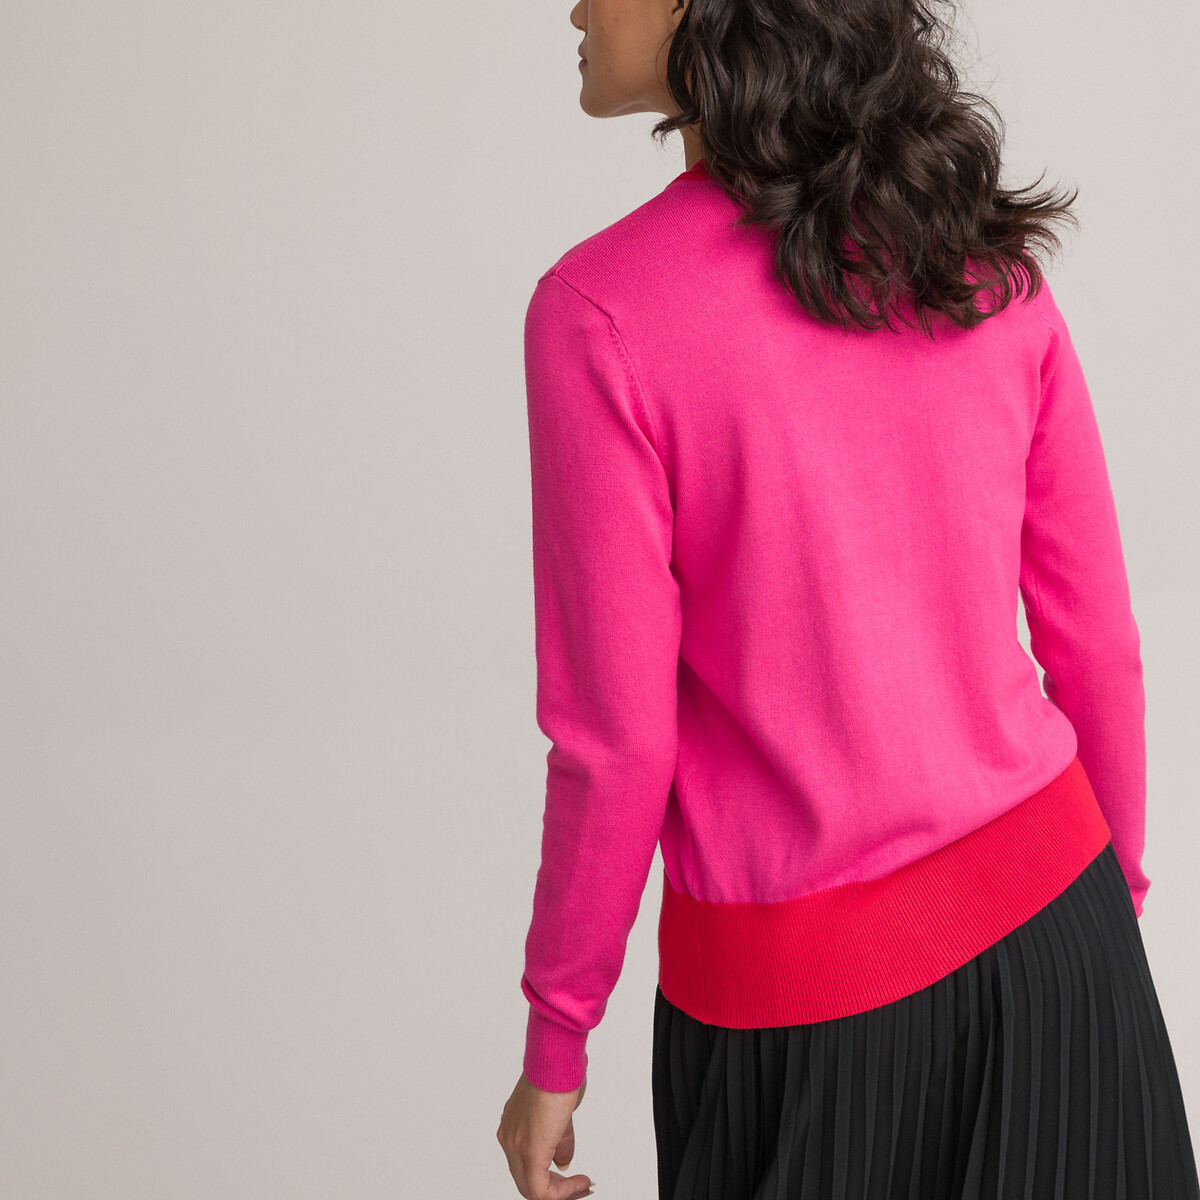 Пуловер LA REDOUTE COLLECTIONS Пуловер Двухцветный с круглым вырезом из тонкого трикотажа M розовый, размер M - фото 4